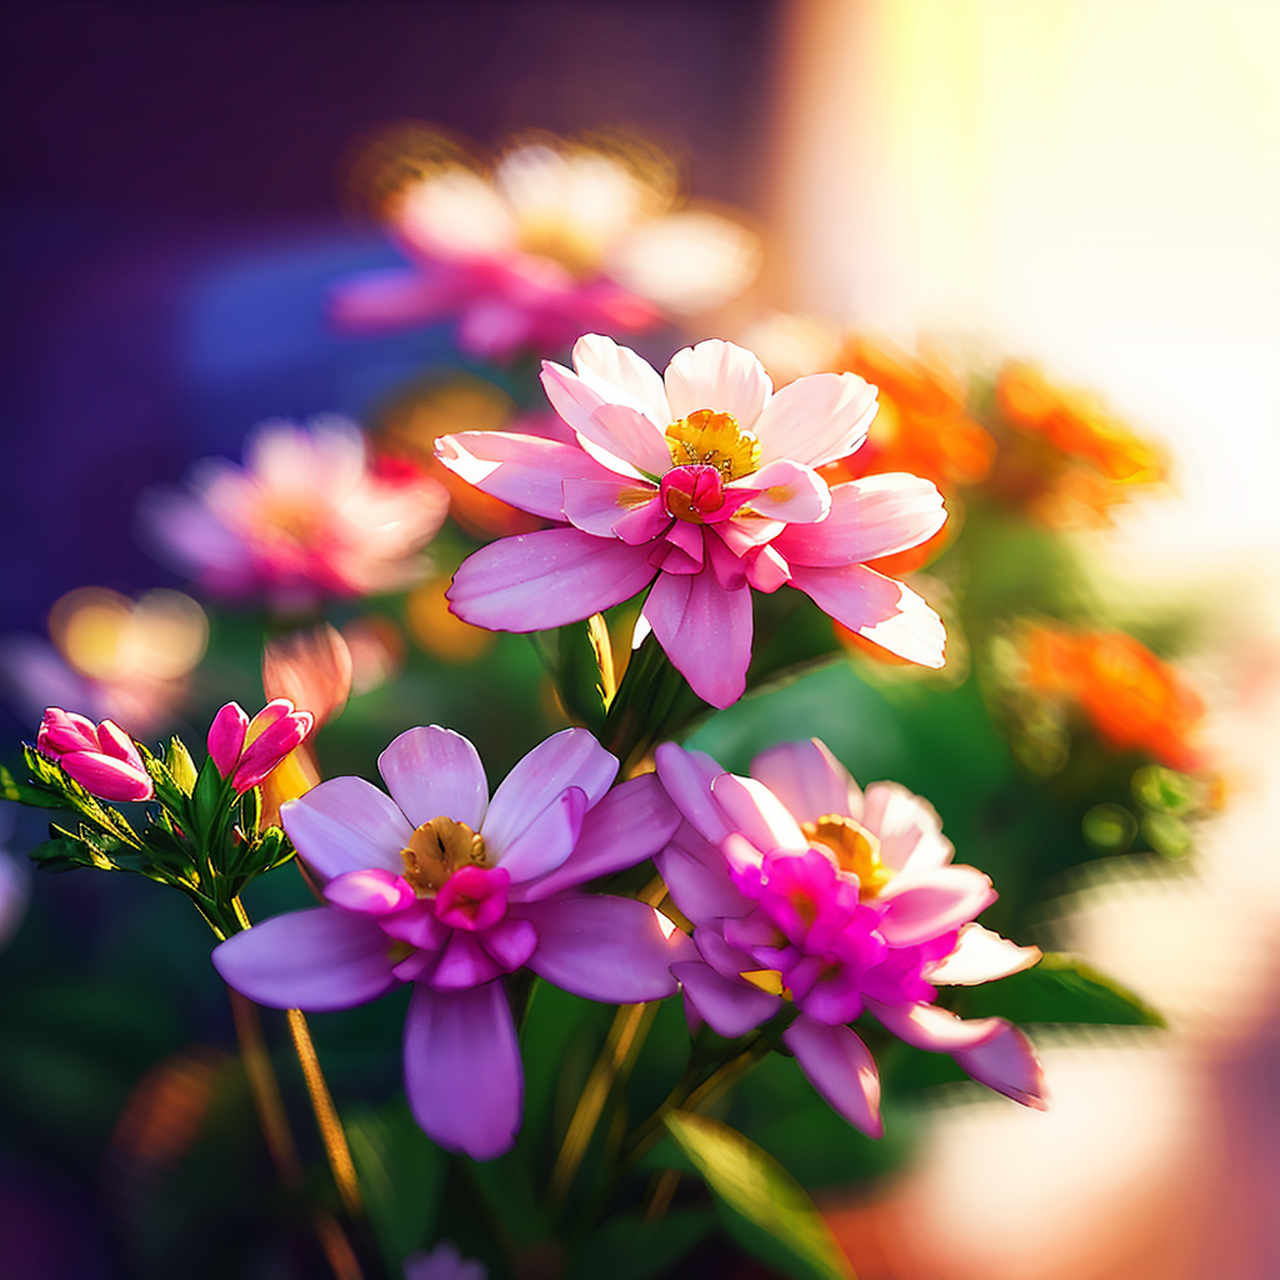 花儿绽放得格外鲜艳,花瓣层层叠叠,散发着迷人的芬芳